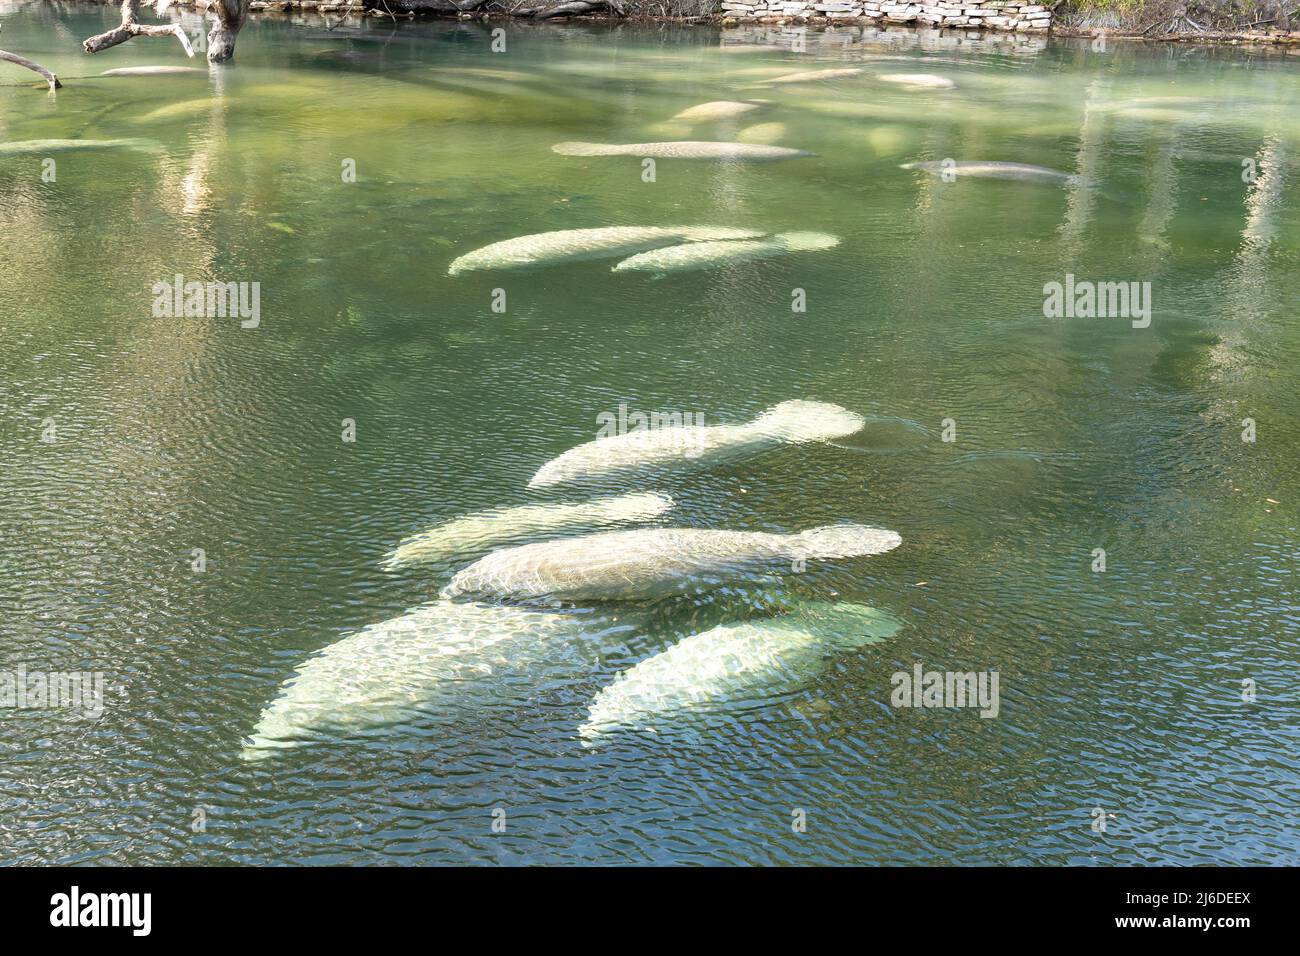 Un troupeau de lamantins de Floride (Trichechus manatus latirostris) nageant dans l'eau de source cristalline du parc national Blue Spring en Floride, aux États-Unis Banque D'Images